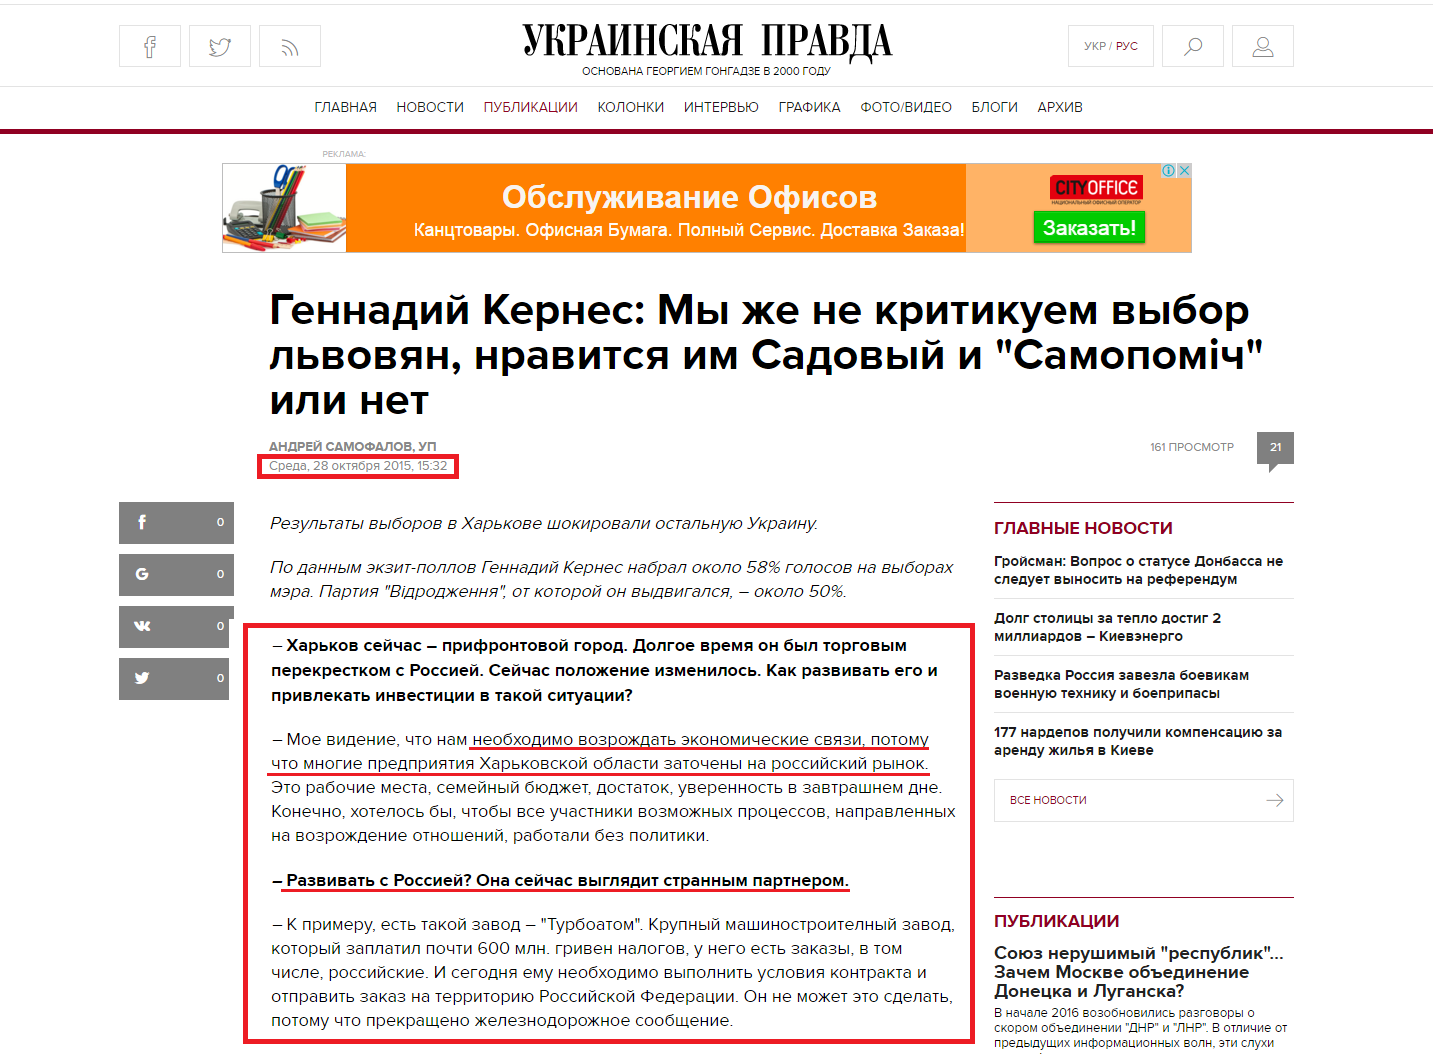 http://www.pravda.com.ua/rus/articles/2015/10/28/7086667/